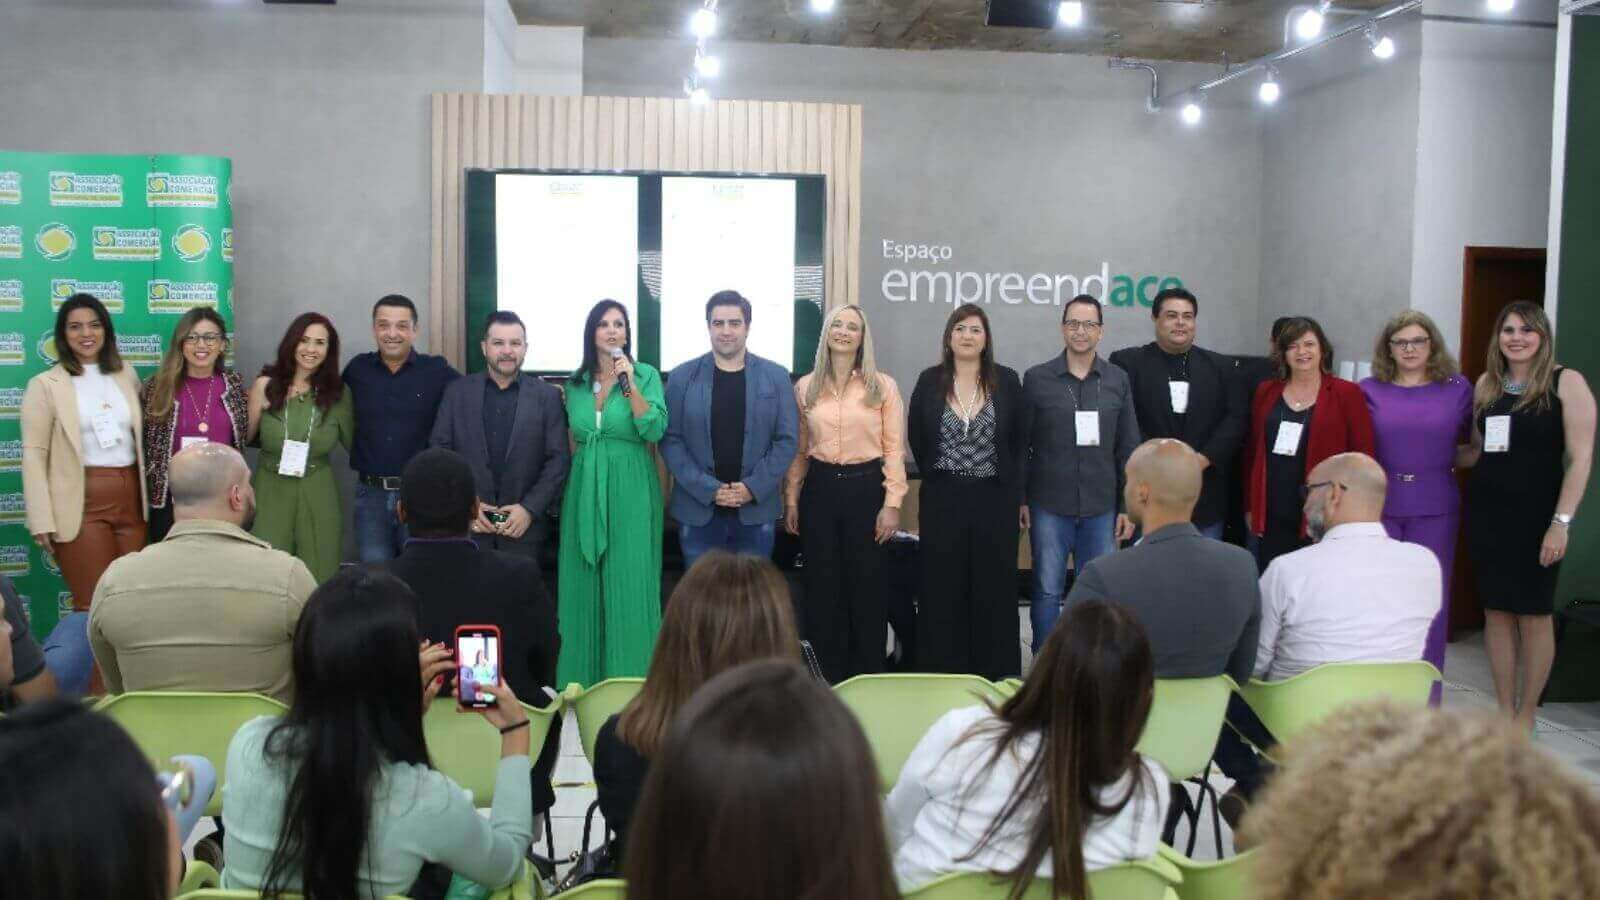 ACE Jundiaí reúne empresários em manhã de café, negócios e aclamação da nova presidente